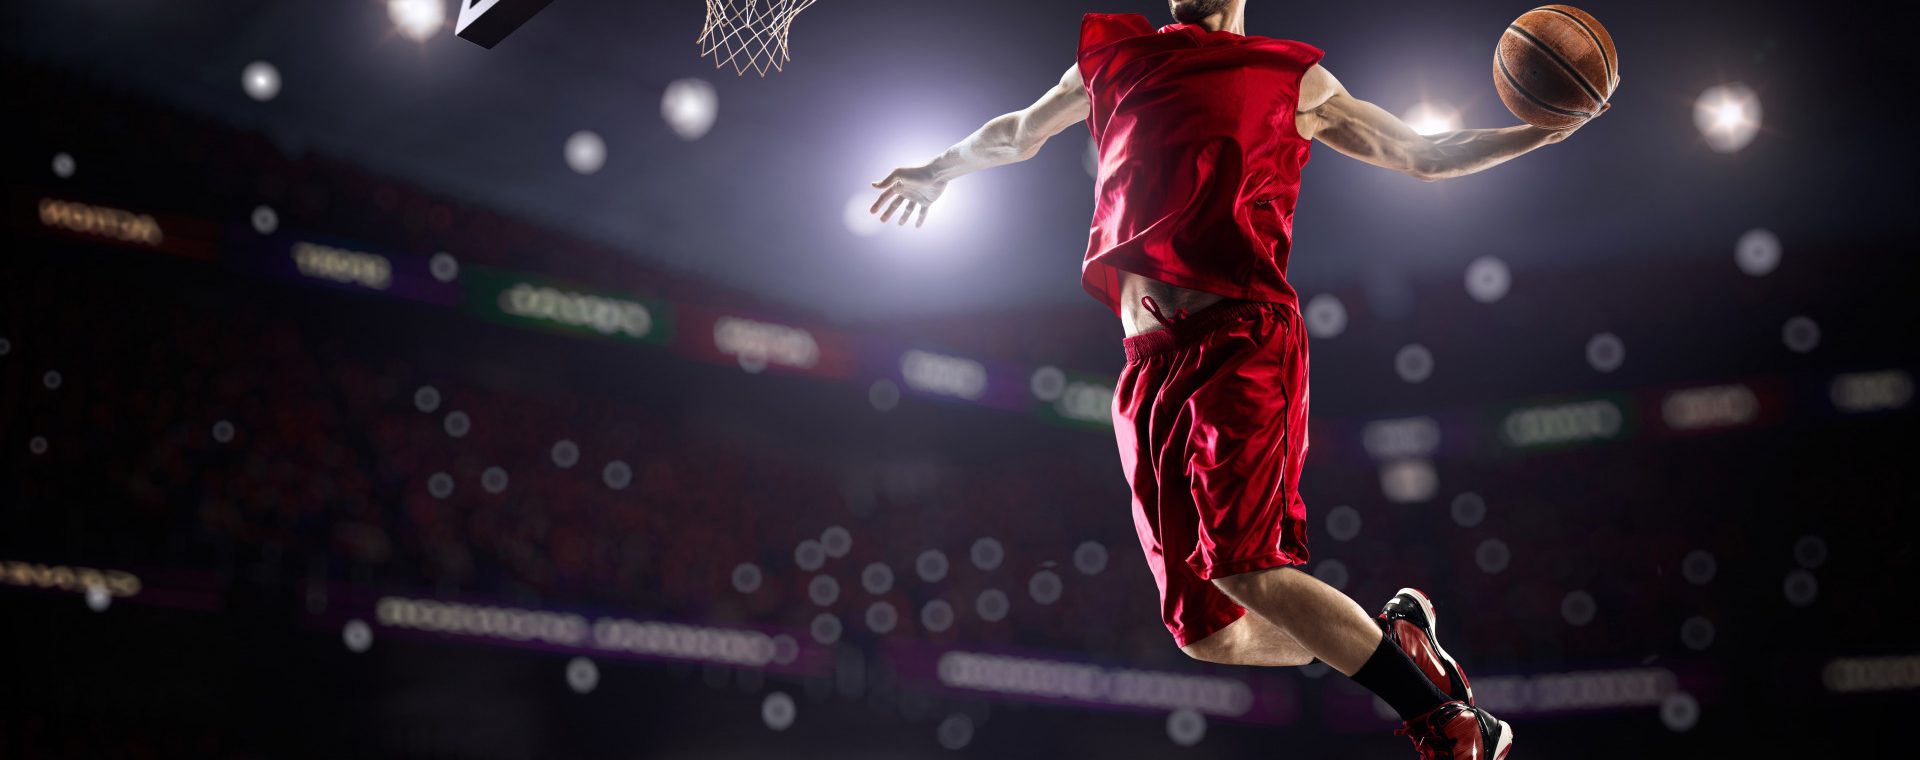 sportsmen muzhchina basketbolist v krasnom uniforma maika sh